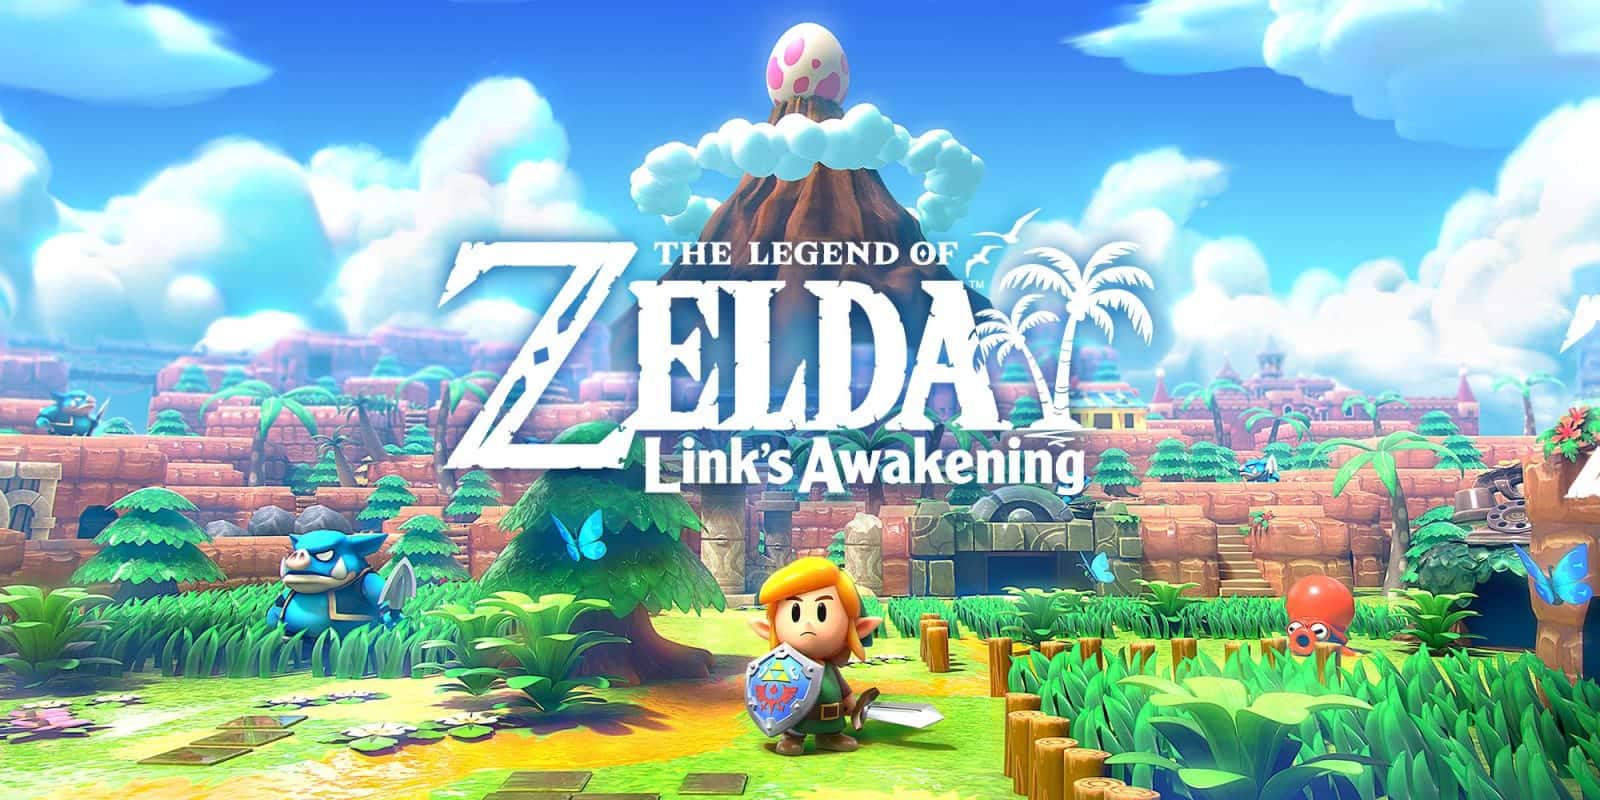 The Legend of Zelda - A Link to the Past (SNES): saiba como encontrar todos  os Hearts Pieces - Nintendo Blast